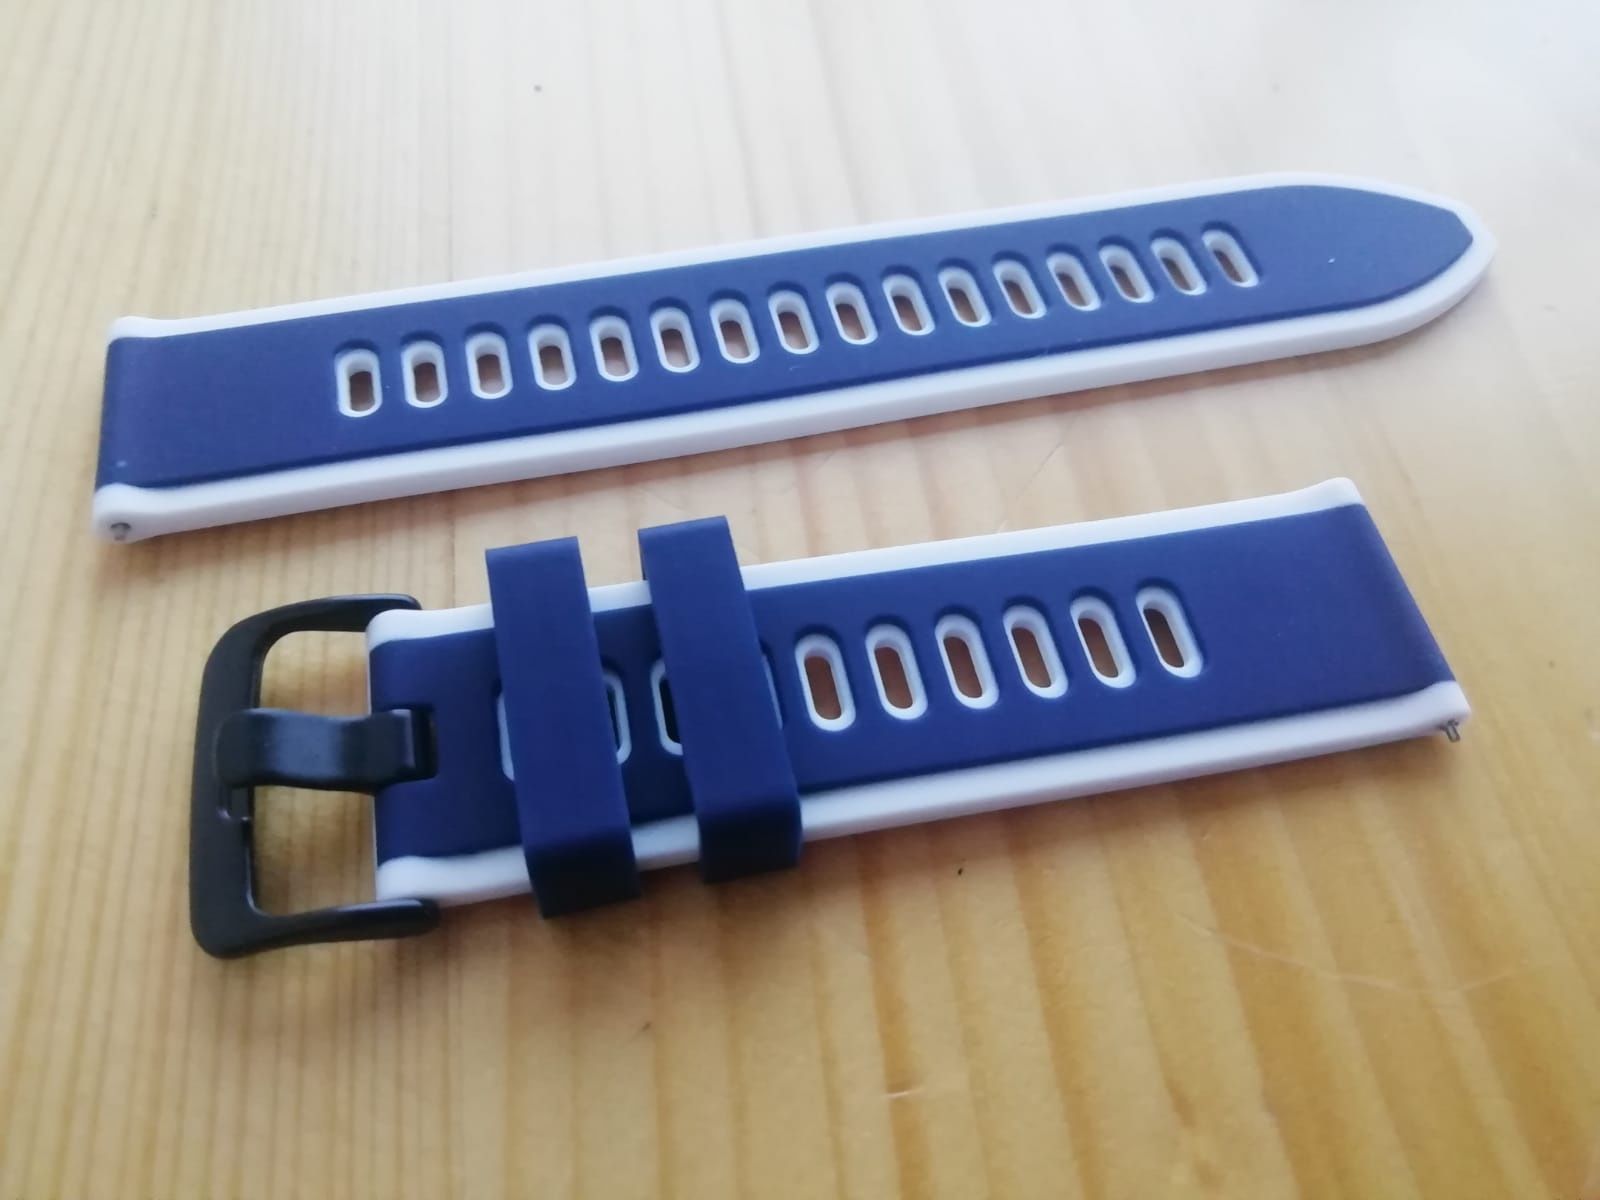 Bracelete 22mm em silicone (Nova) Azul e branca